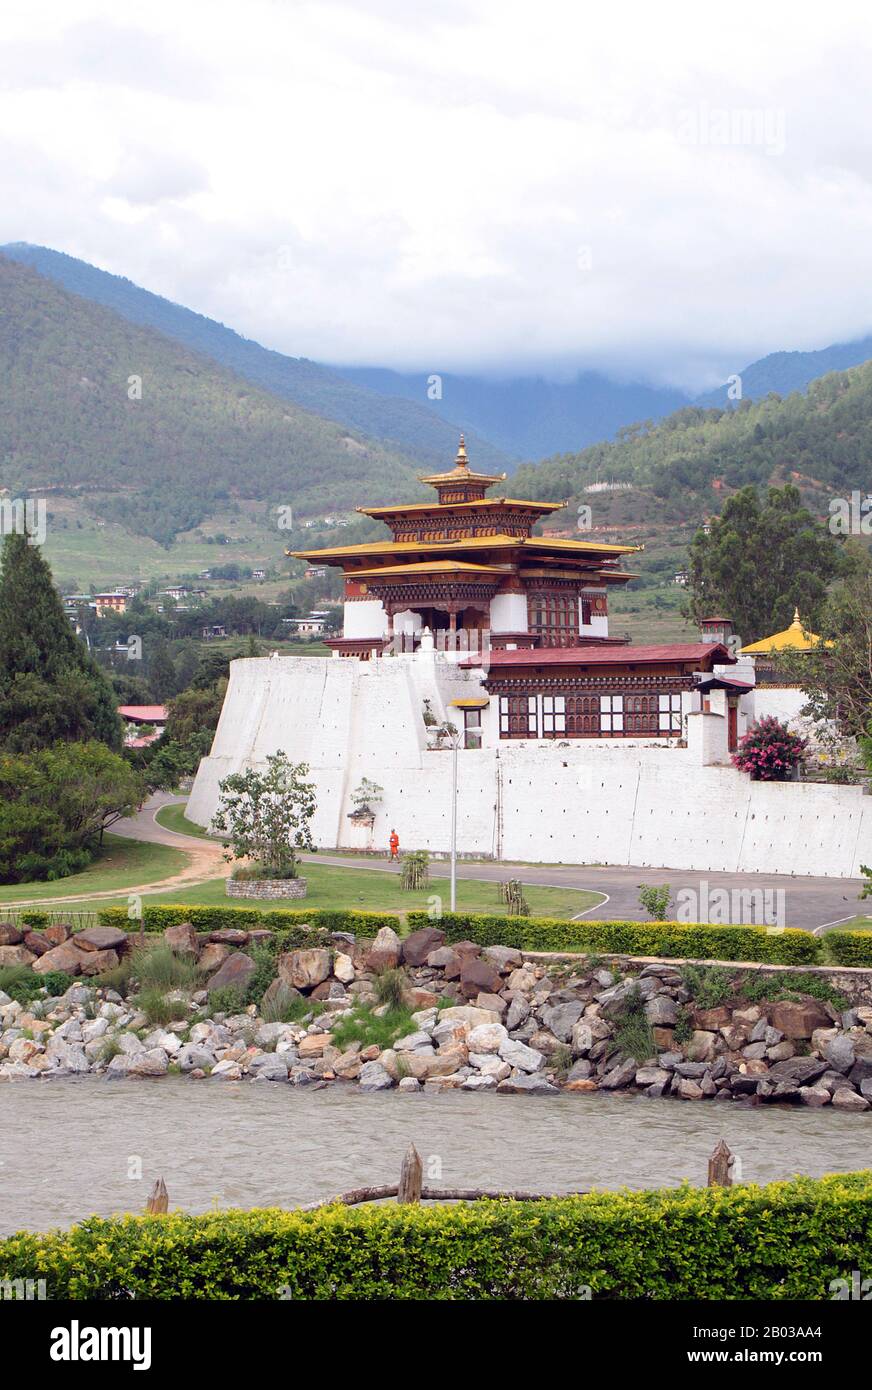 Der Punakha Dzong, auch Pungtang Dewa Chhenbi Phodrang ("der Palast des großen Glücks oder der Glückseligkeit") wurde 1637 - 1638 von der 1. Zhabdrung Rinpoche und Gründer des bhutanischen Staates Ngawang Namgyal (1594 - 1651) erbaut. Es ist der zweitgrößte und zweitälteste Dzong (Festung) in Bhutan, der am Zusammenfluss der Flüsse Pho Chhu (Vater) und Mo Chhu (Mutter) im Tal Punakha-Wangdue liegt. Punakha Dzong ist das Verwaltungszentrum des Distrikts Punakha und war einst bis zum Jahr 1855, als die Hauptstadt nach Thi verlegt wurde, Verwaltungszentrum und Regierungssitz von Bhutan Stockfoto